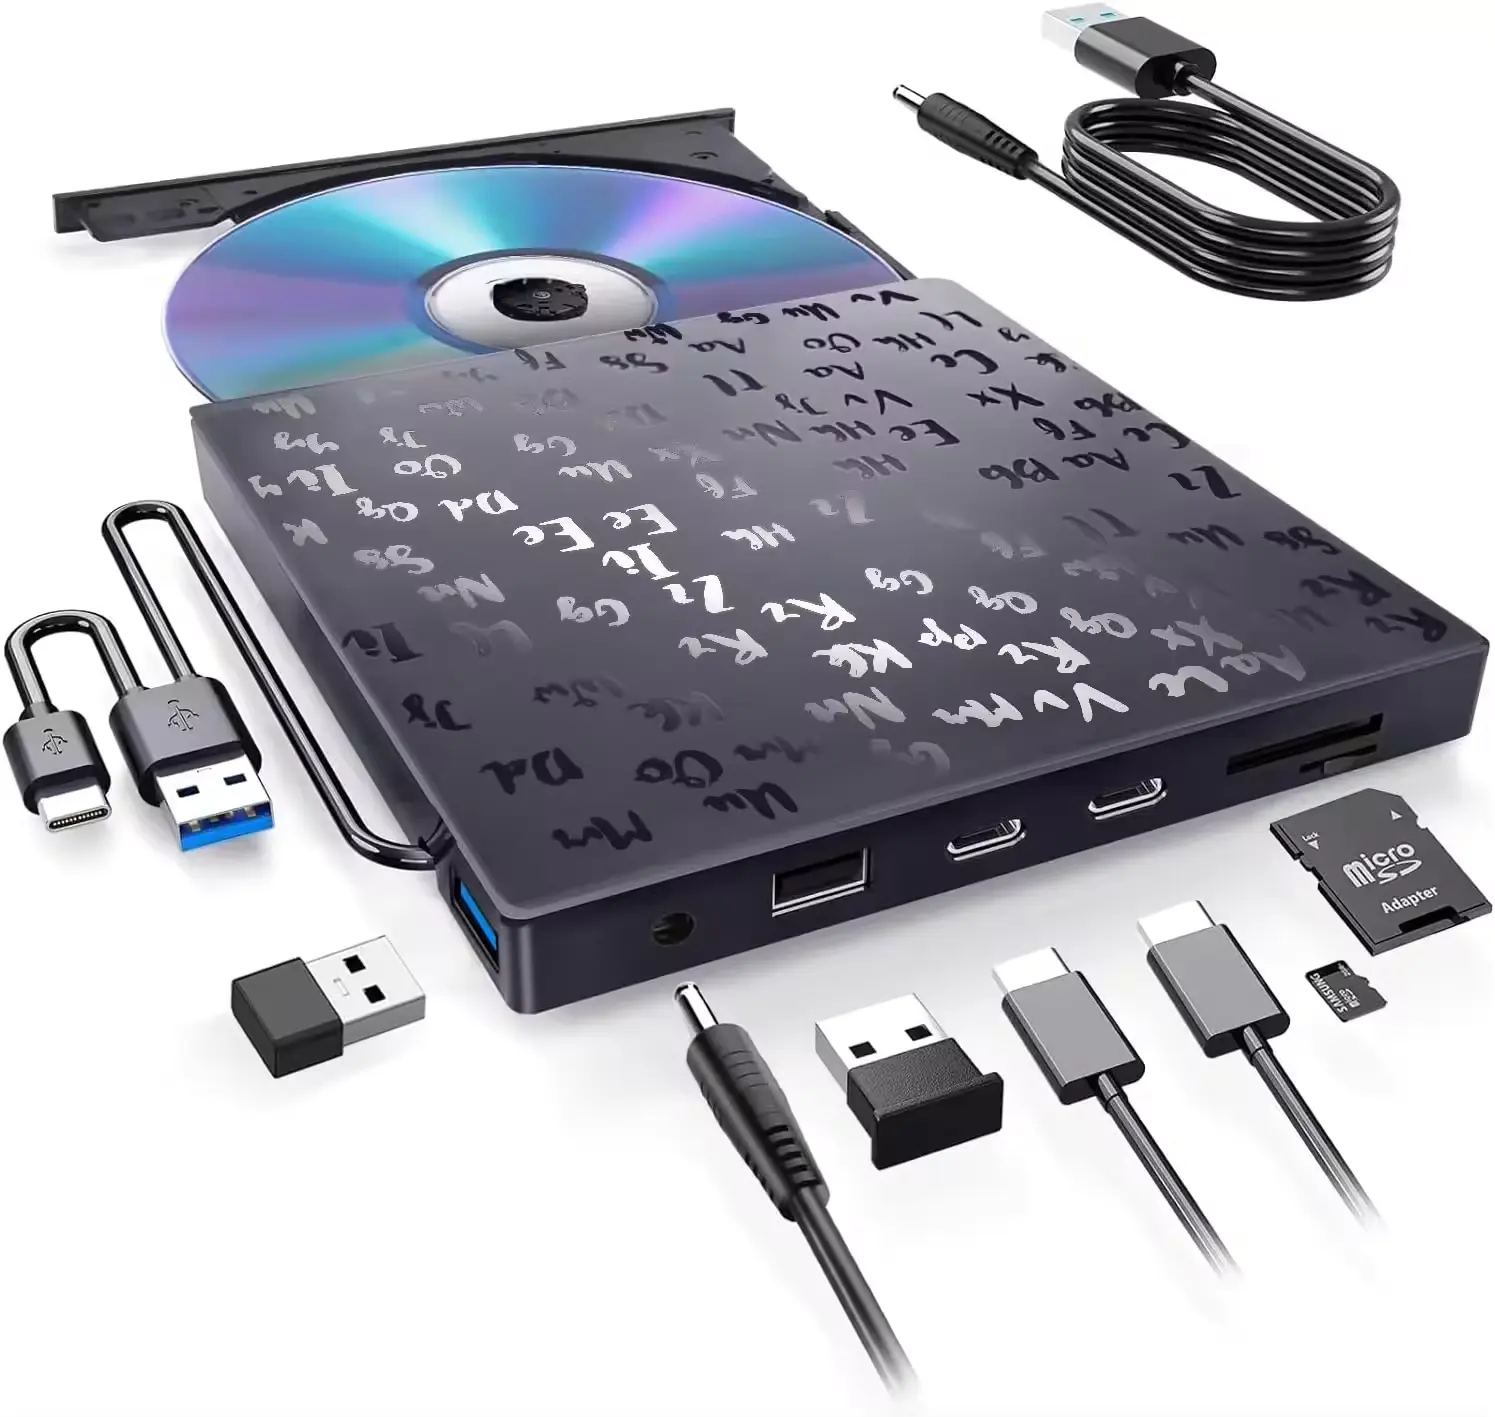 Gravador de DVD Rom para laptop, unidade óptica USB 3.0 tipo C para PC, gravador externo para desktop e laptop